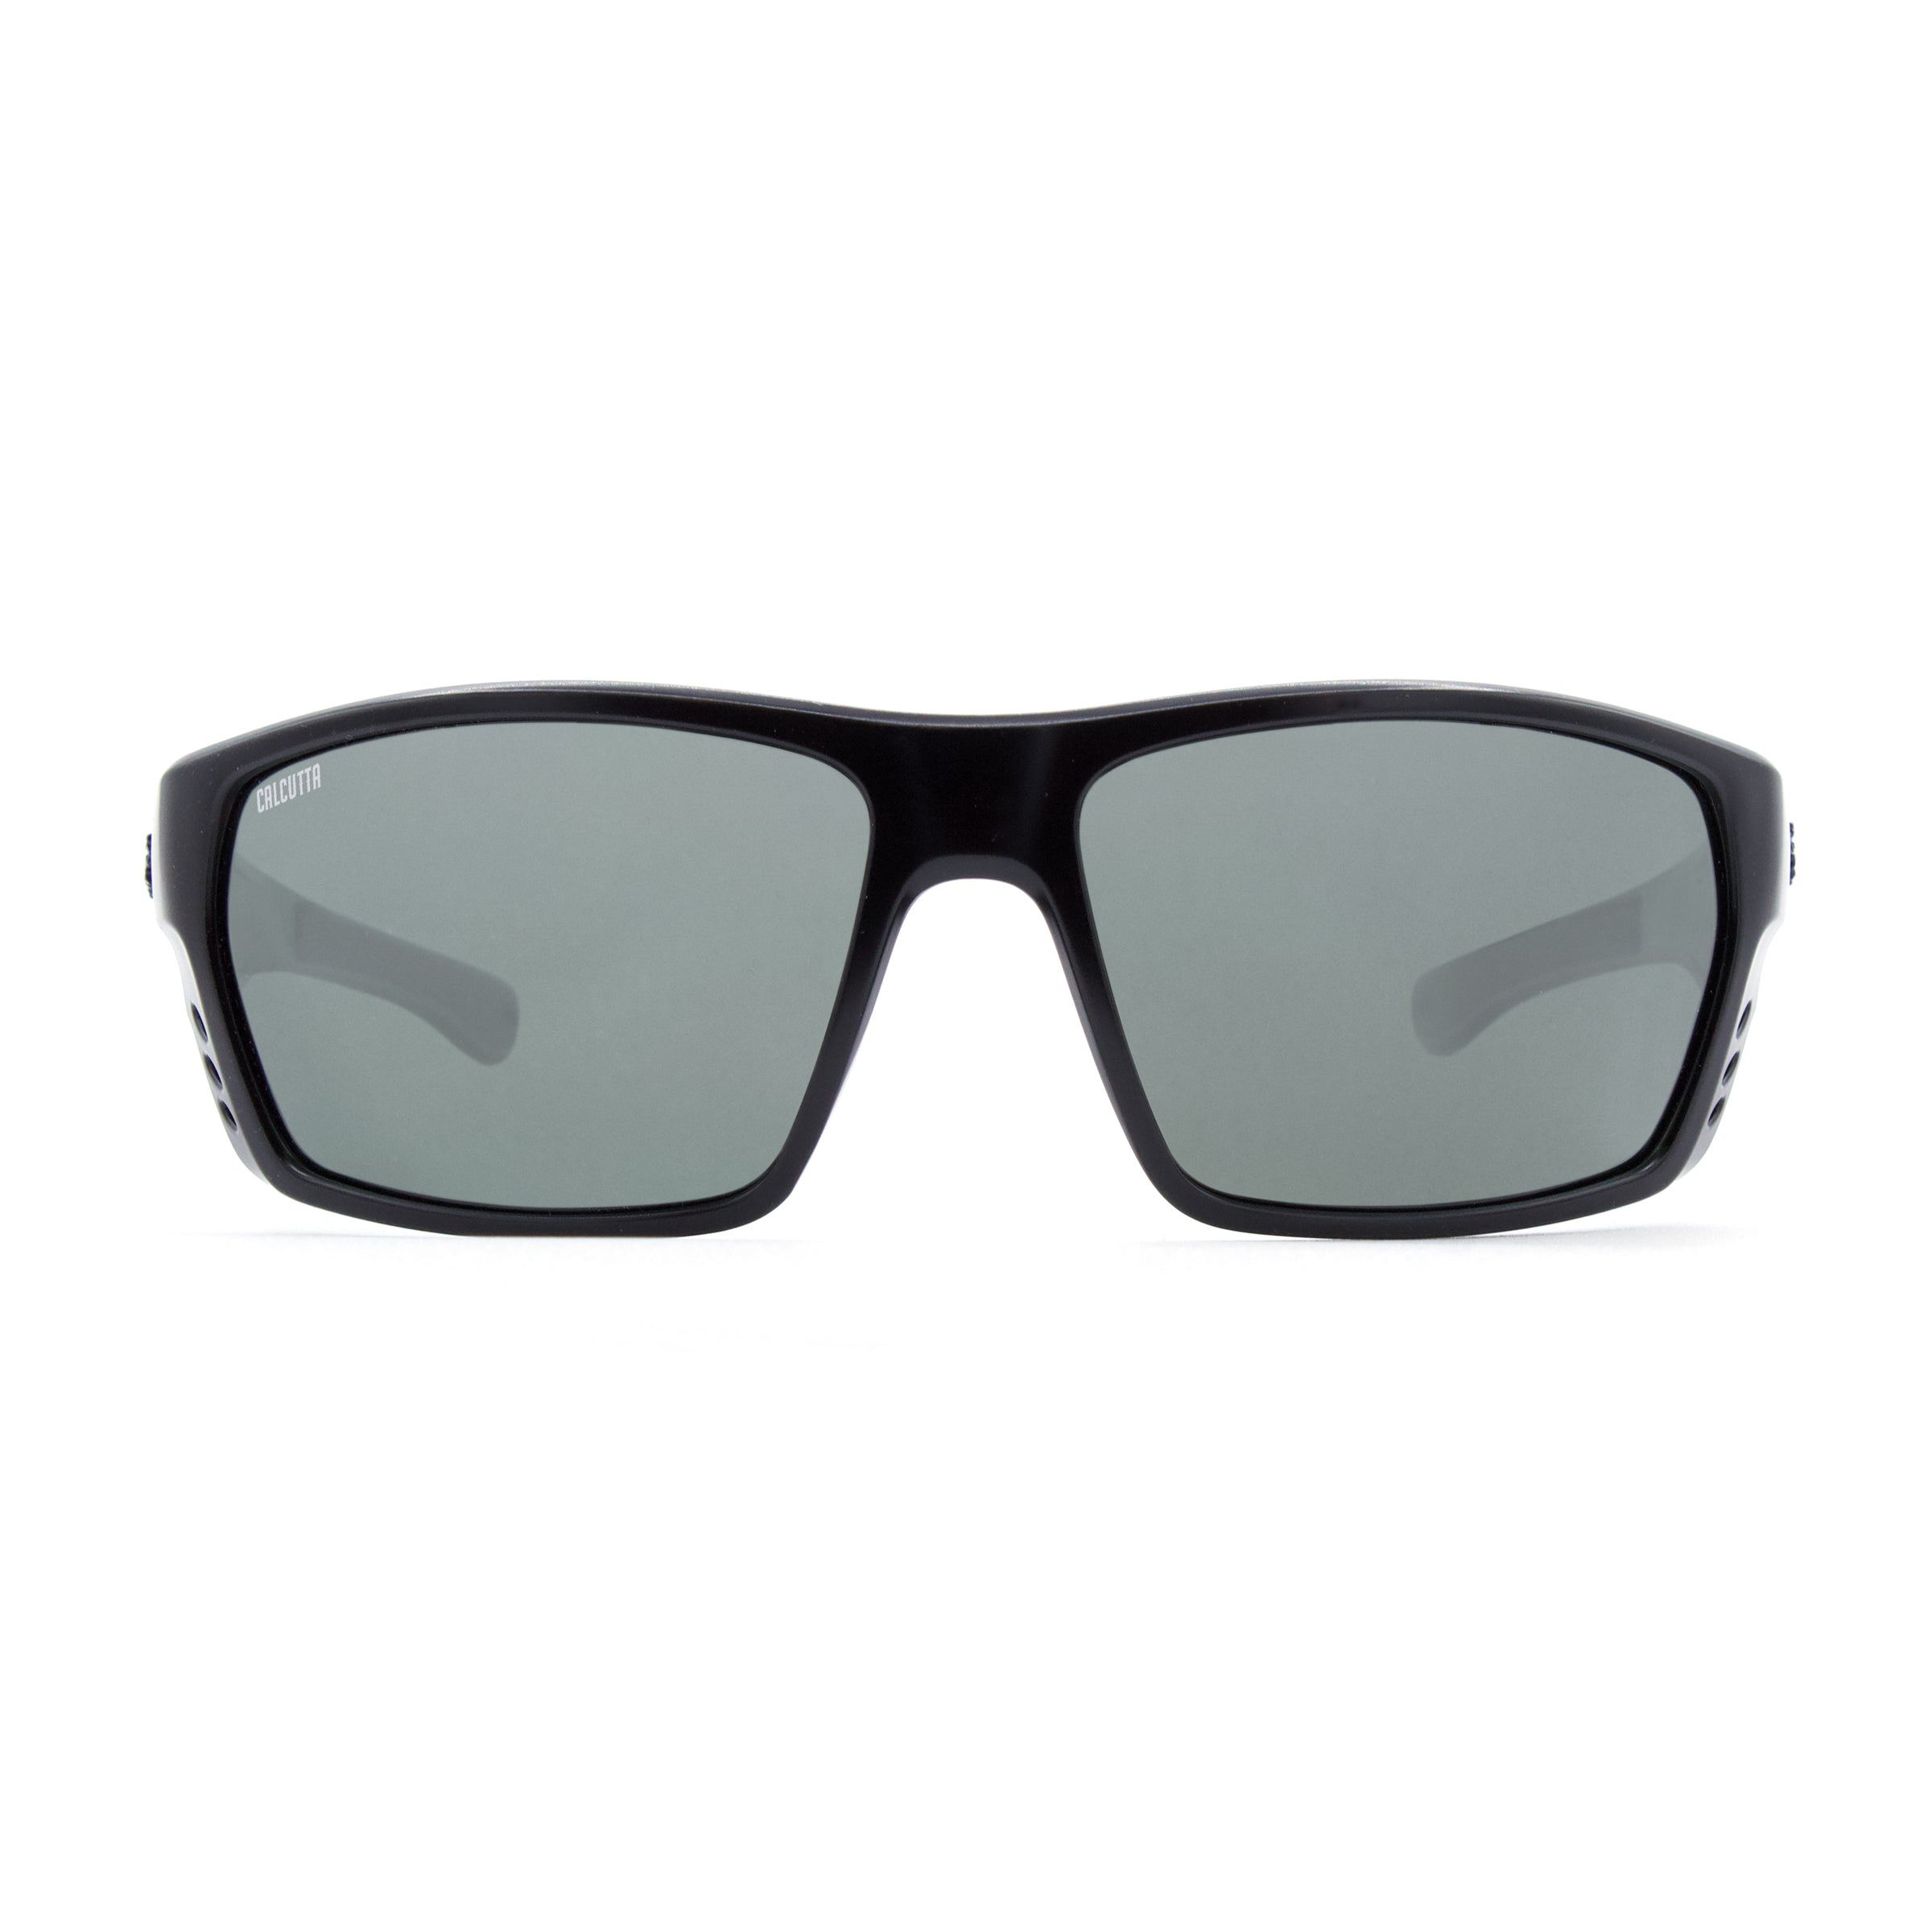 Calcutta Fathom sunglasses gray lens front